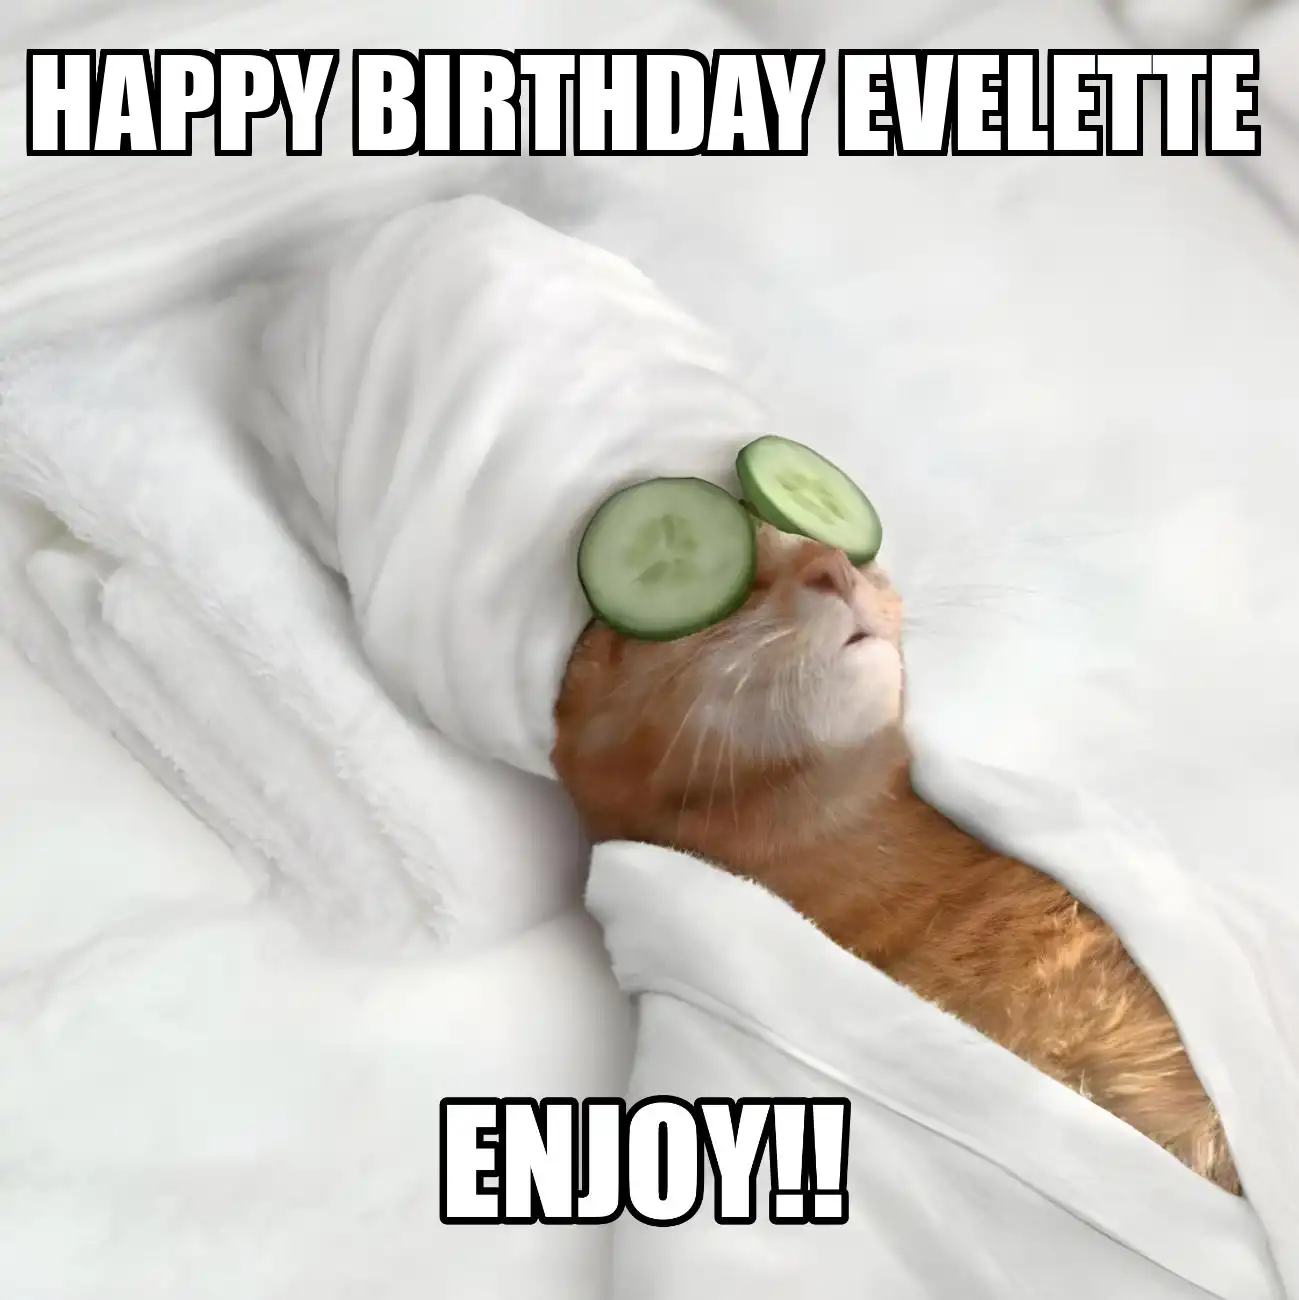 Happy Birthday Evelette Enjoy Cat Meme